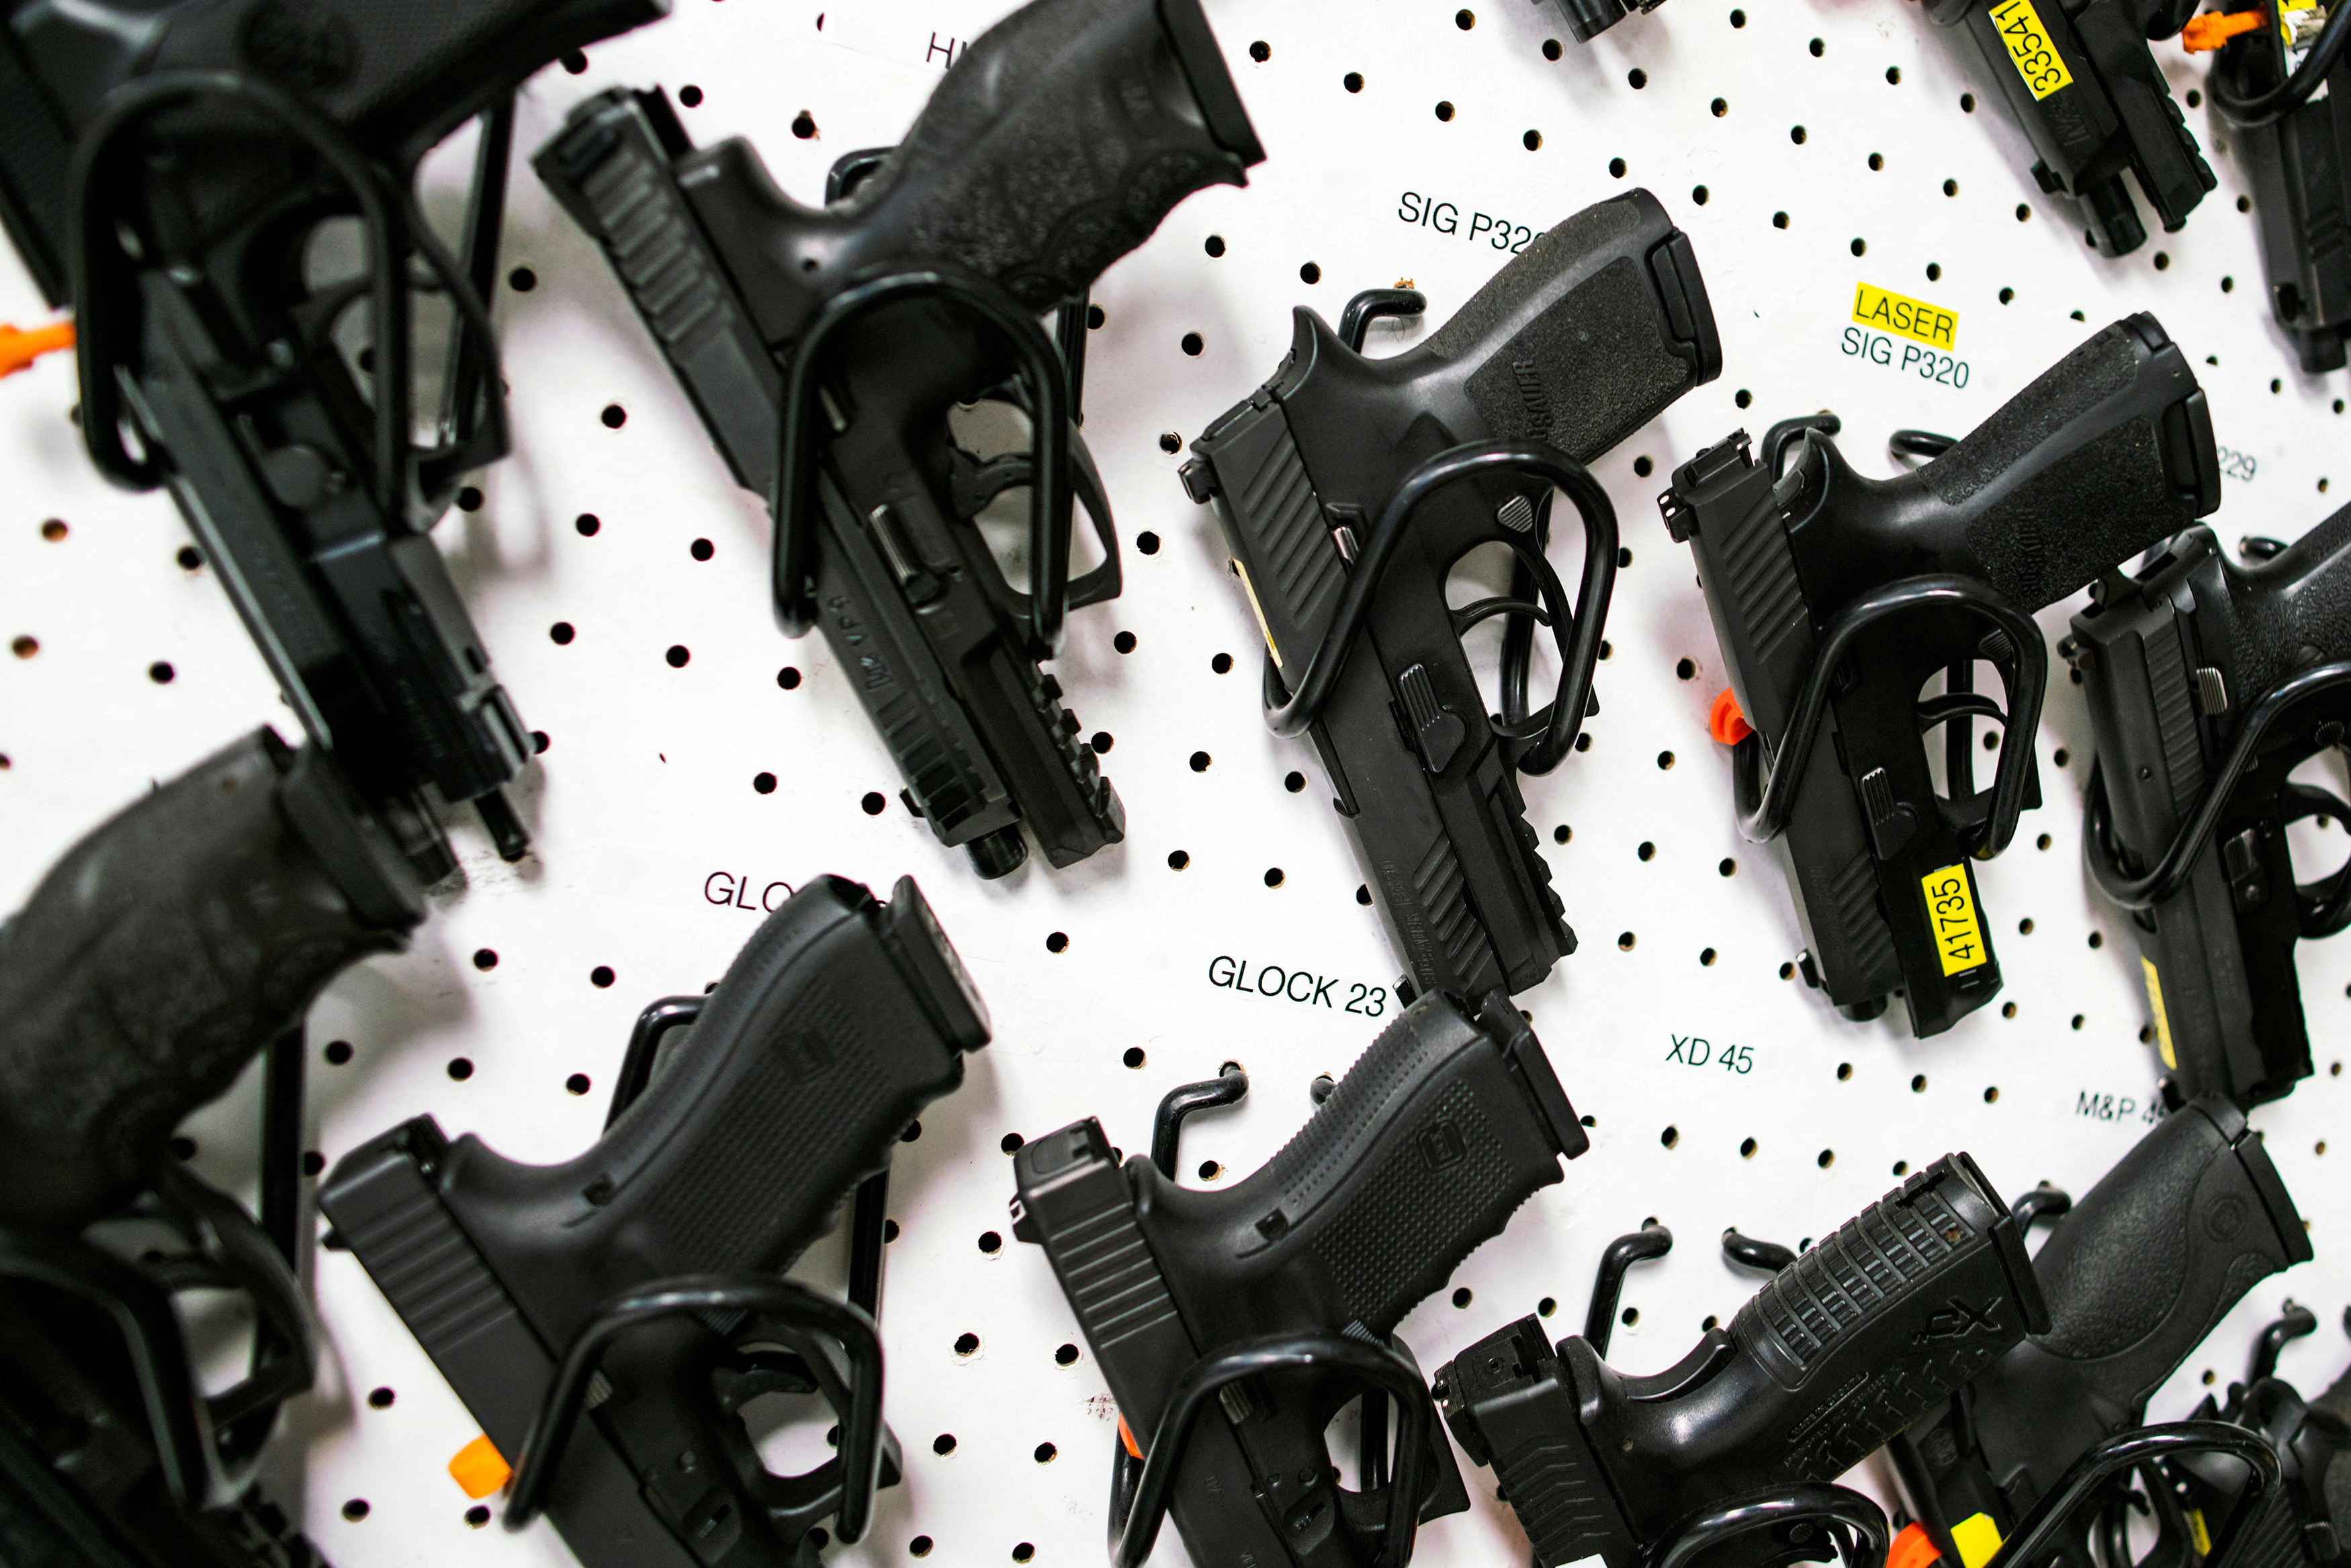 Guns are displayed at Shore Shot Pistol Range gun shop in Lakewood Township, New Jersey